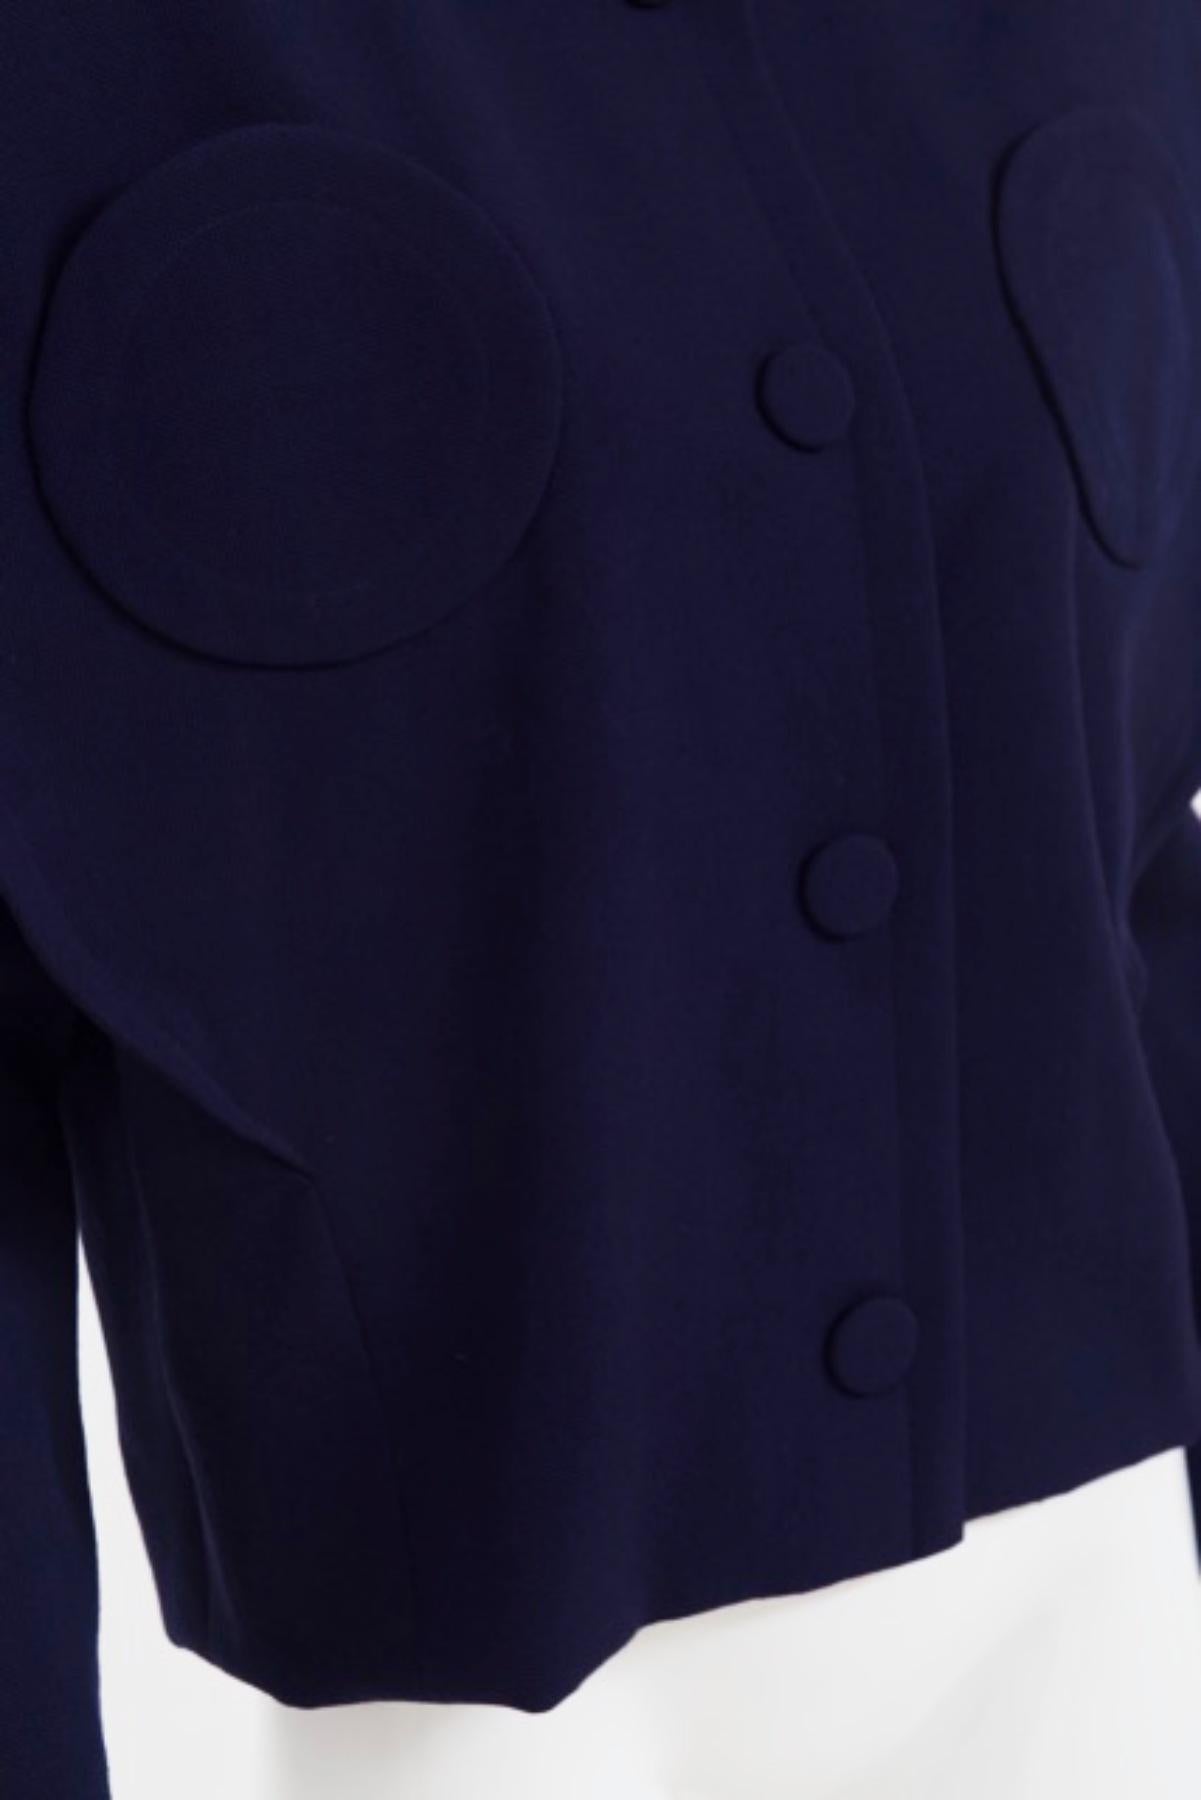 Pierre Cardin Vintage Blue Cotton Blazer For Sale 6